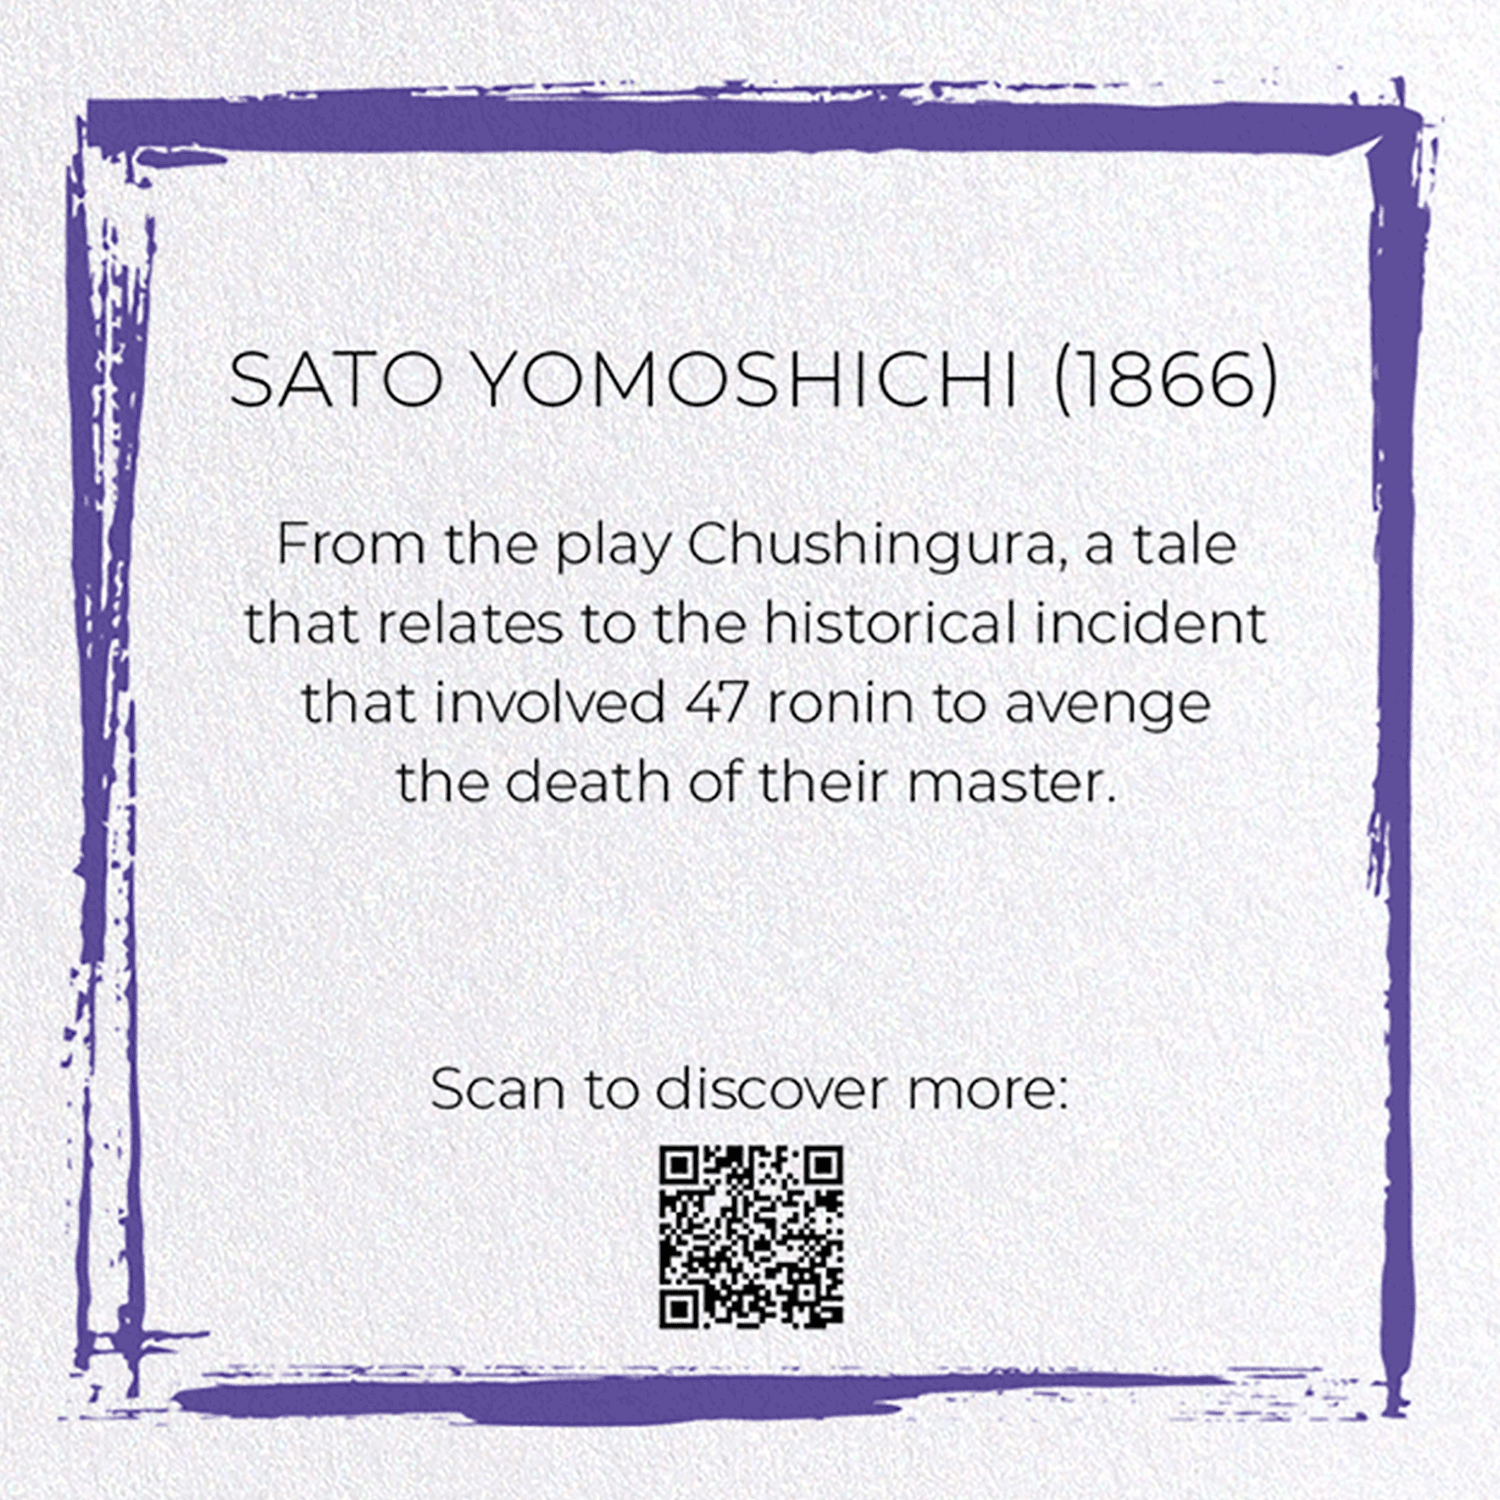 SATO YOMOSHICHI (1866)